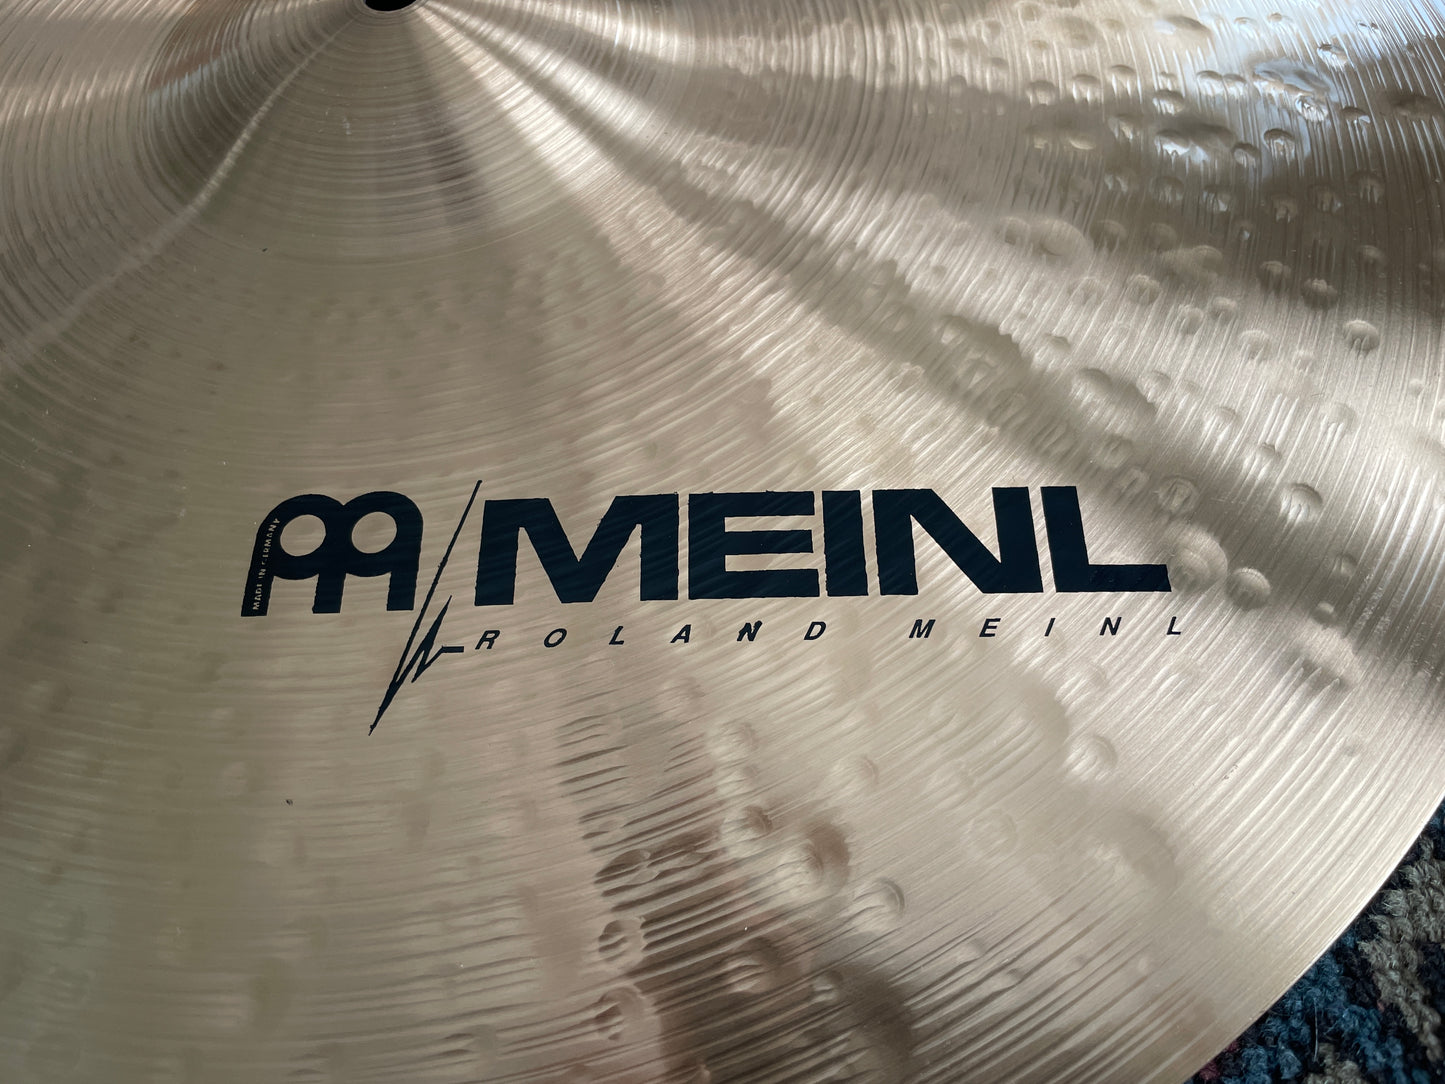 N.O.S. 20" Meinl Amun Medium Ride Cymbal A20MR 2396g